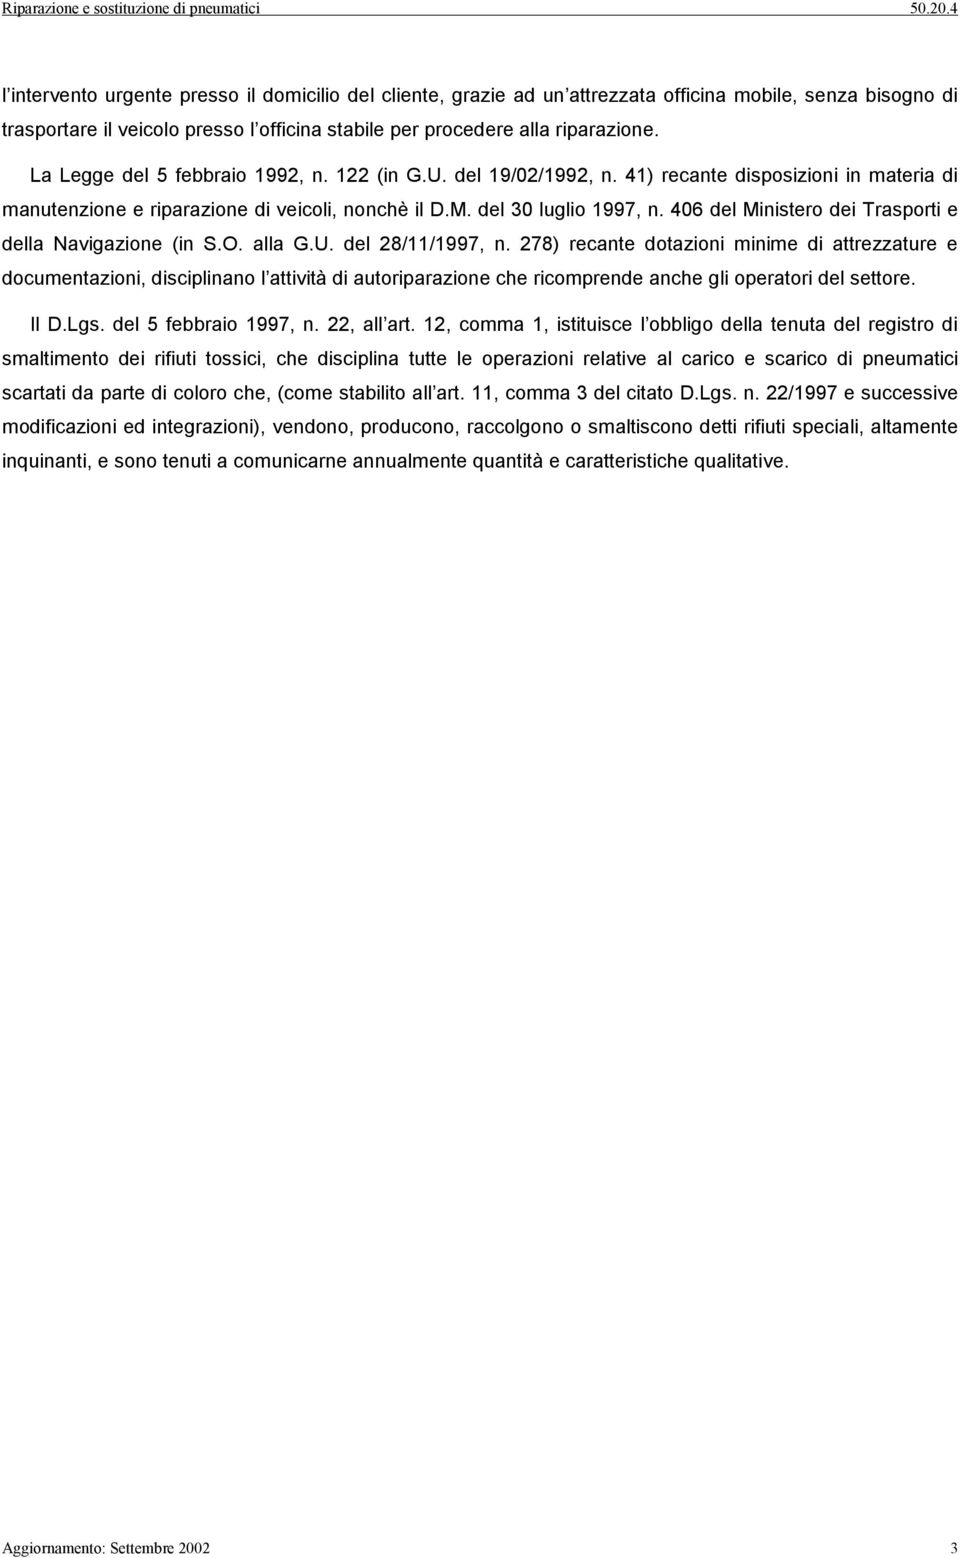 406 del Ministero dei Trasporti e della Navigazione (in S.O. alla G.U. del 28/11/1997, n.